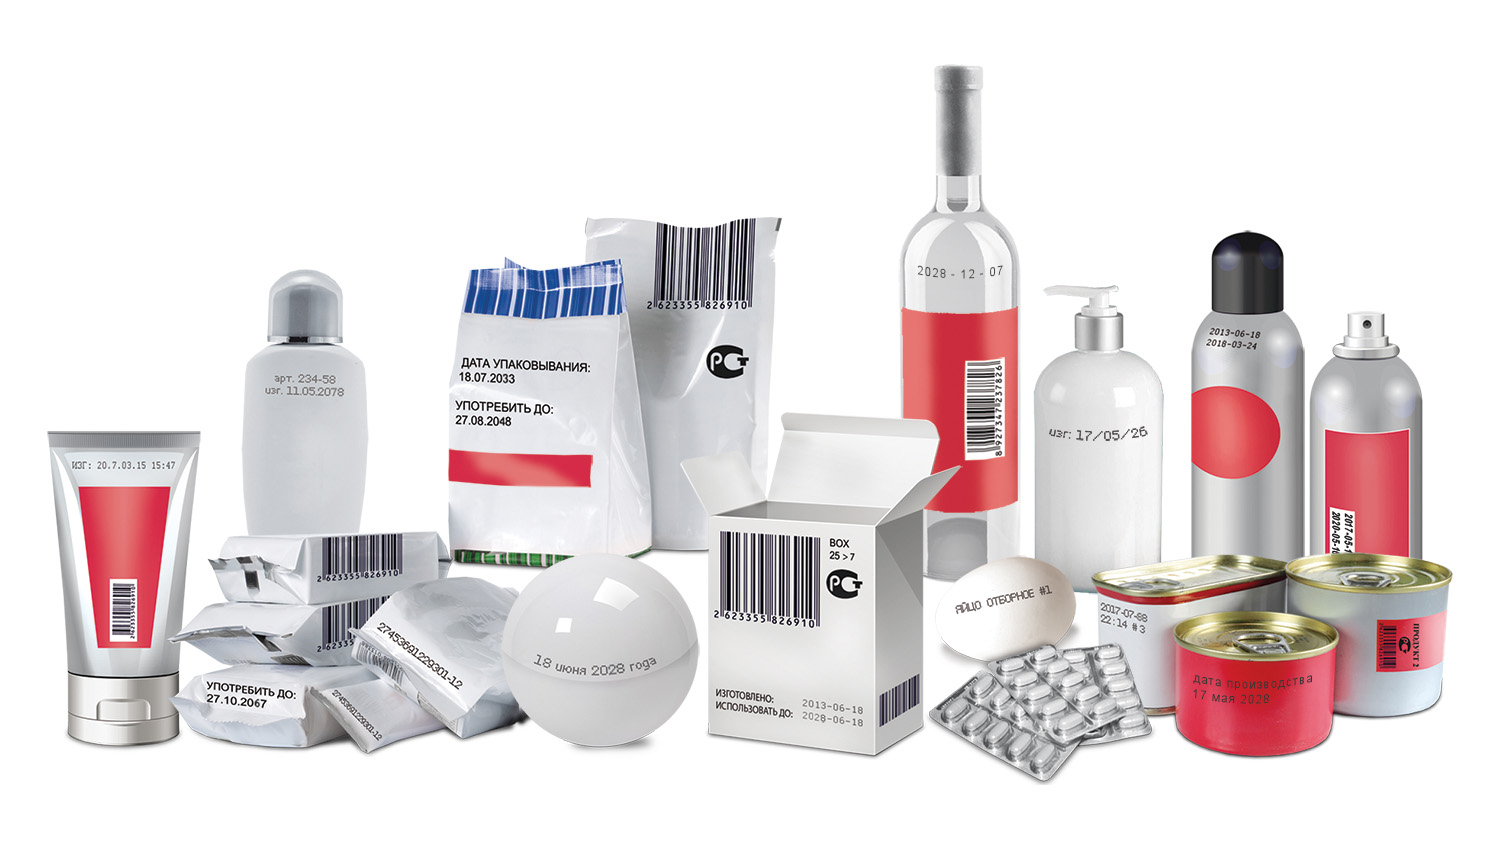 Ассортимент товаров с маркировкой - кремы, напитки, косметика, аэрозоли и лекарства